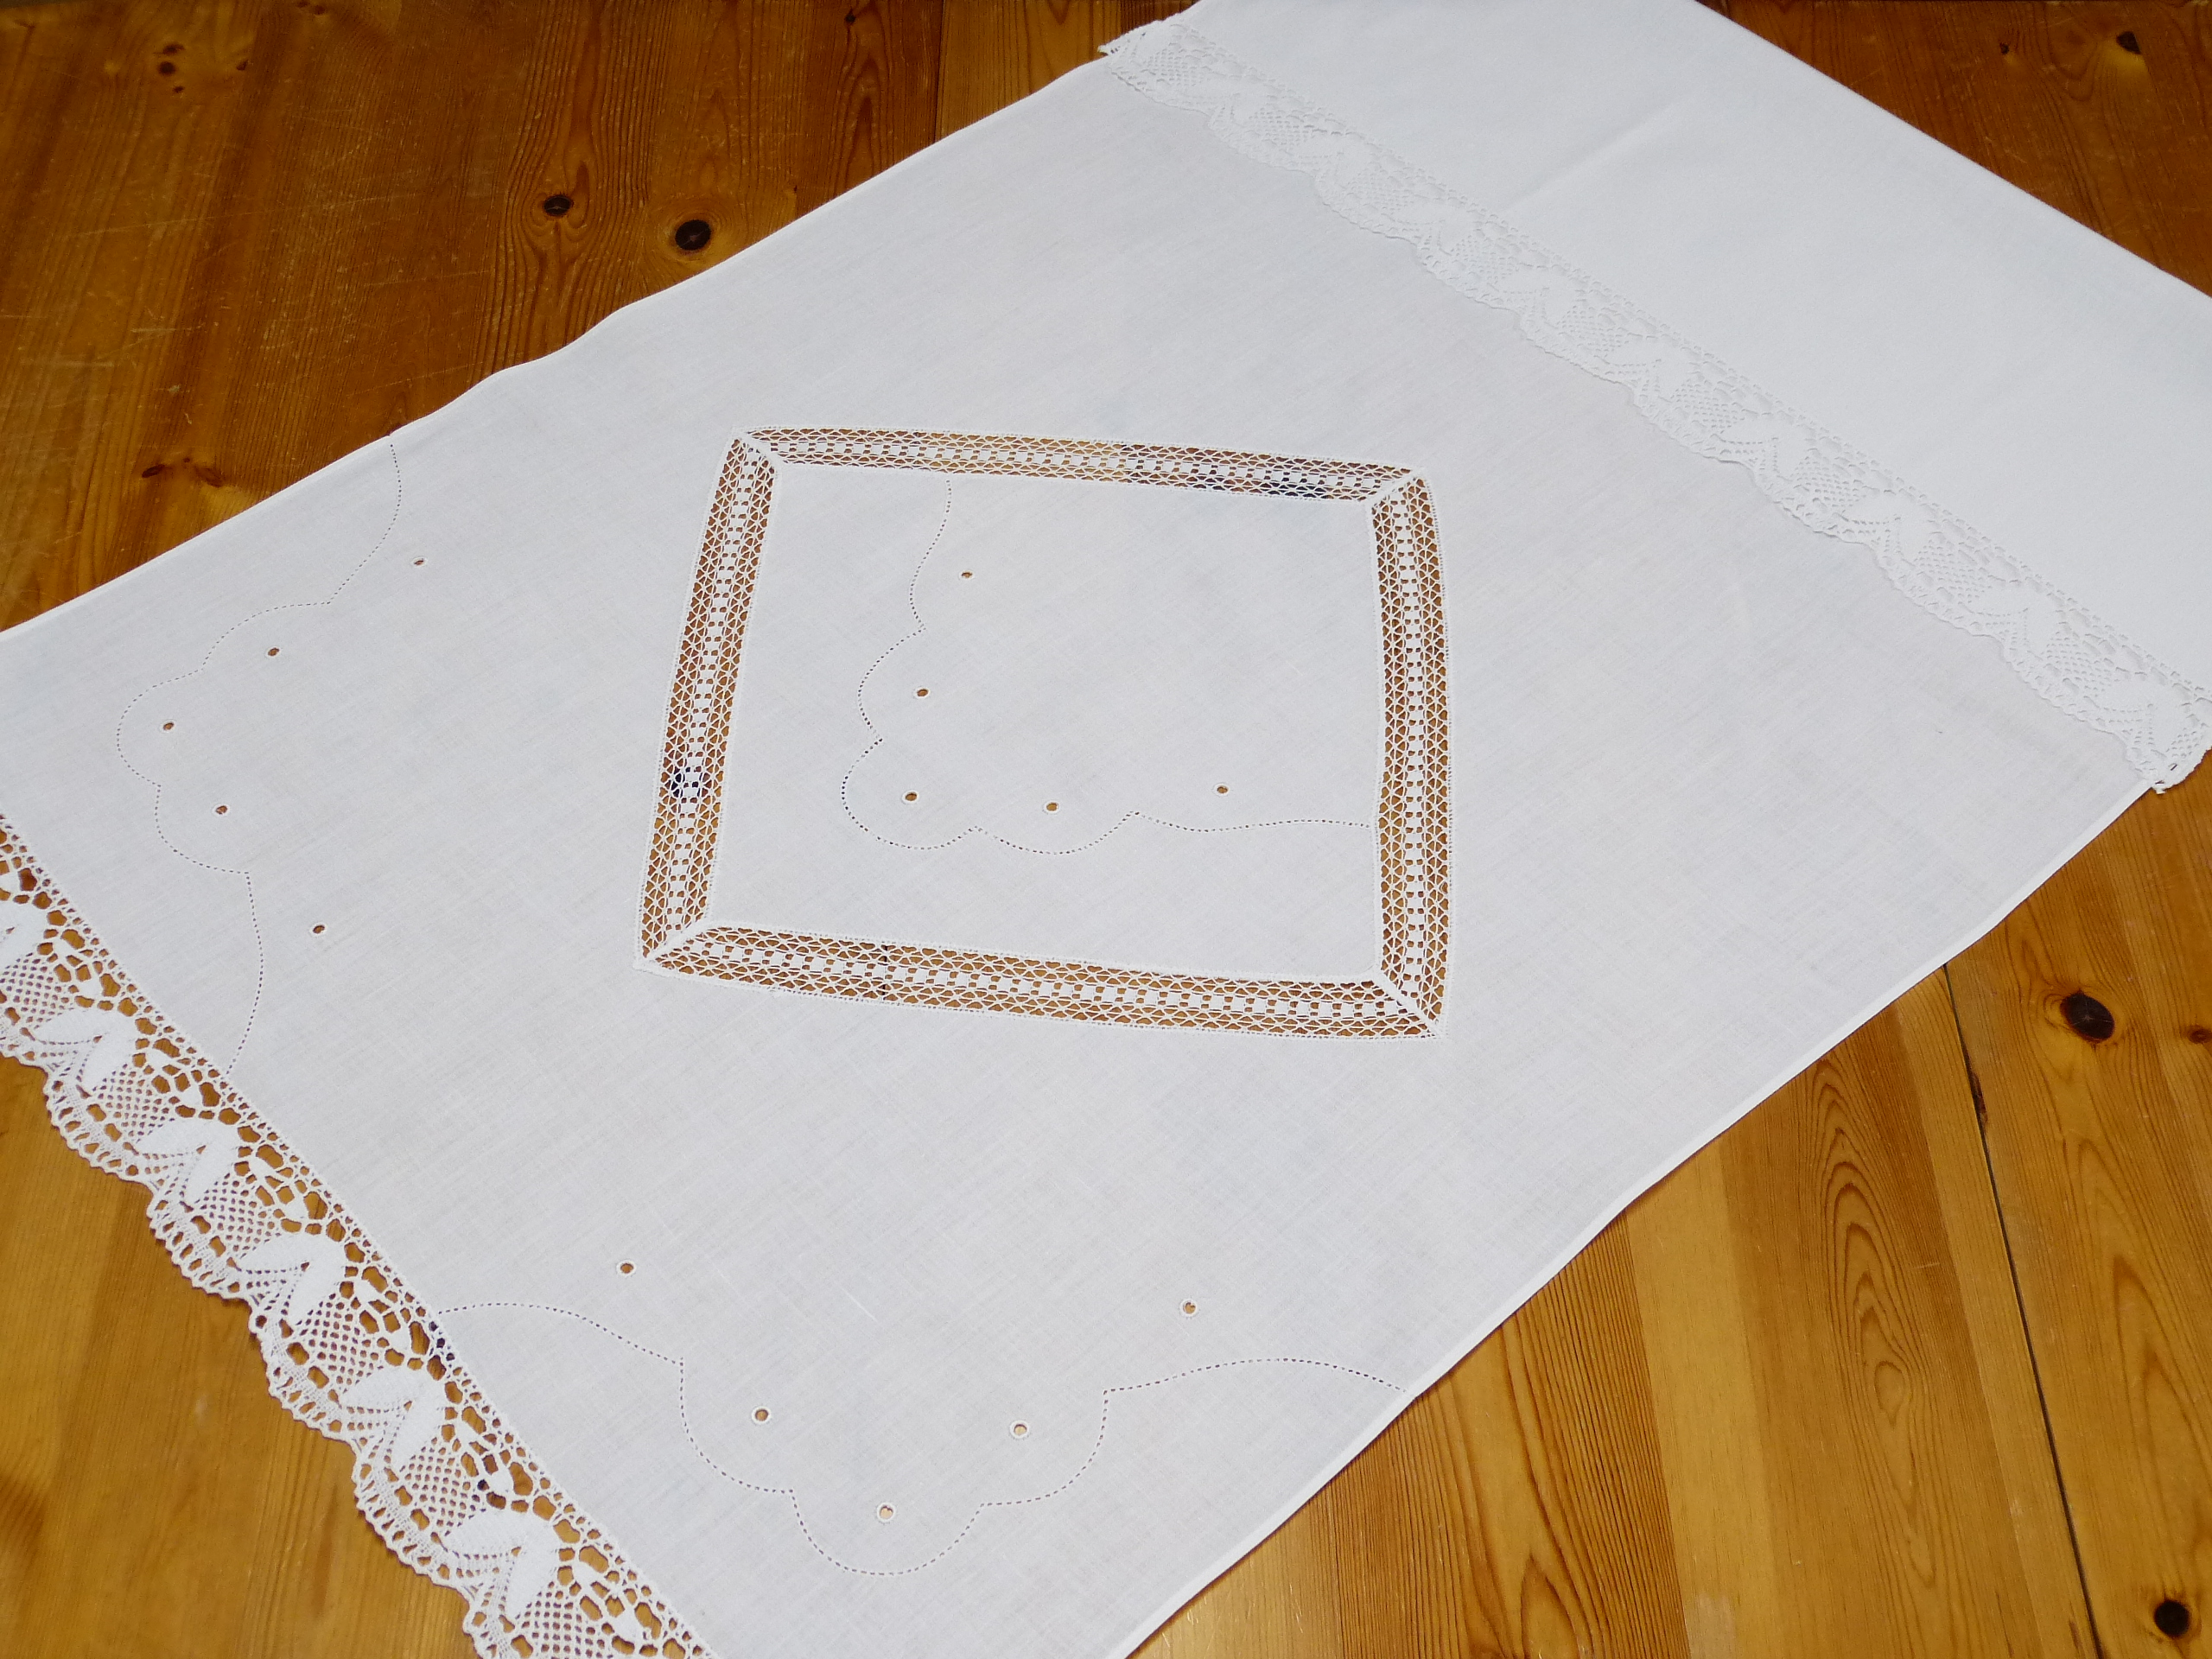 Überhandtuch feinste Baumwolle Weißstickerei Spitzenquadrat in Mitte Spitzen an Querrändern 64x120